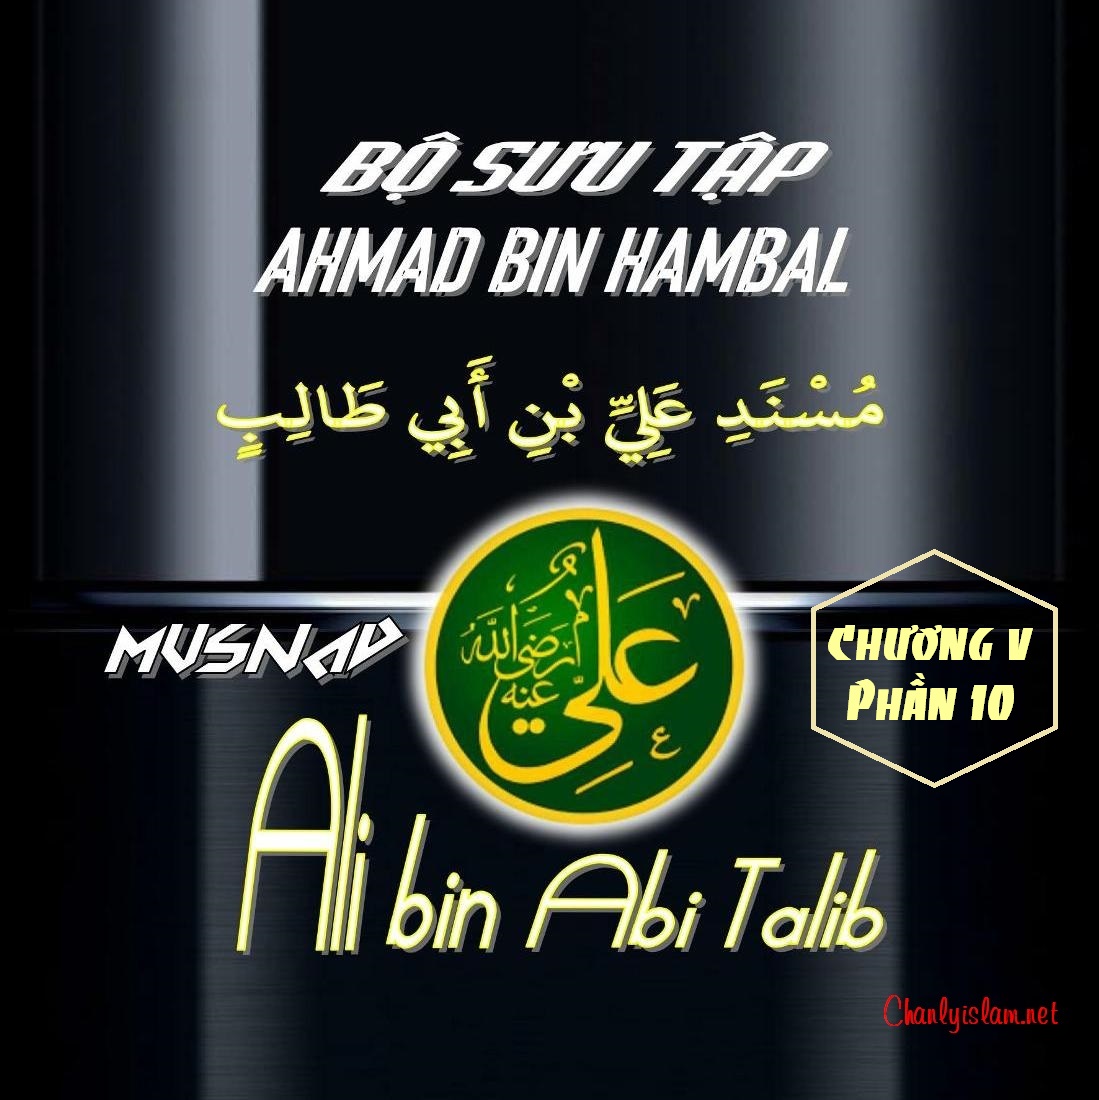 BỘ SƯU TẬP MUSNAD IMAM AHMAD IBN HANBAL - CHƯƠNG V - MUSNAD ALI BIN ABI TALIB - PHẦN 10